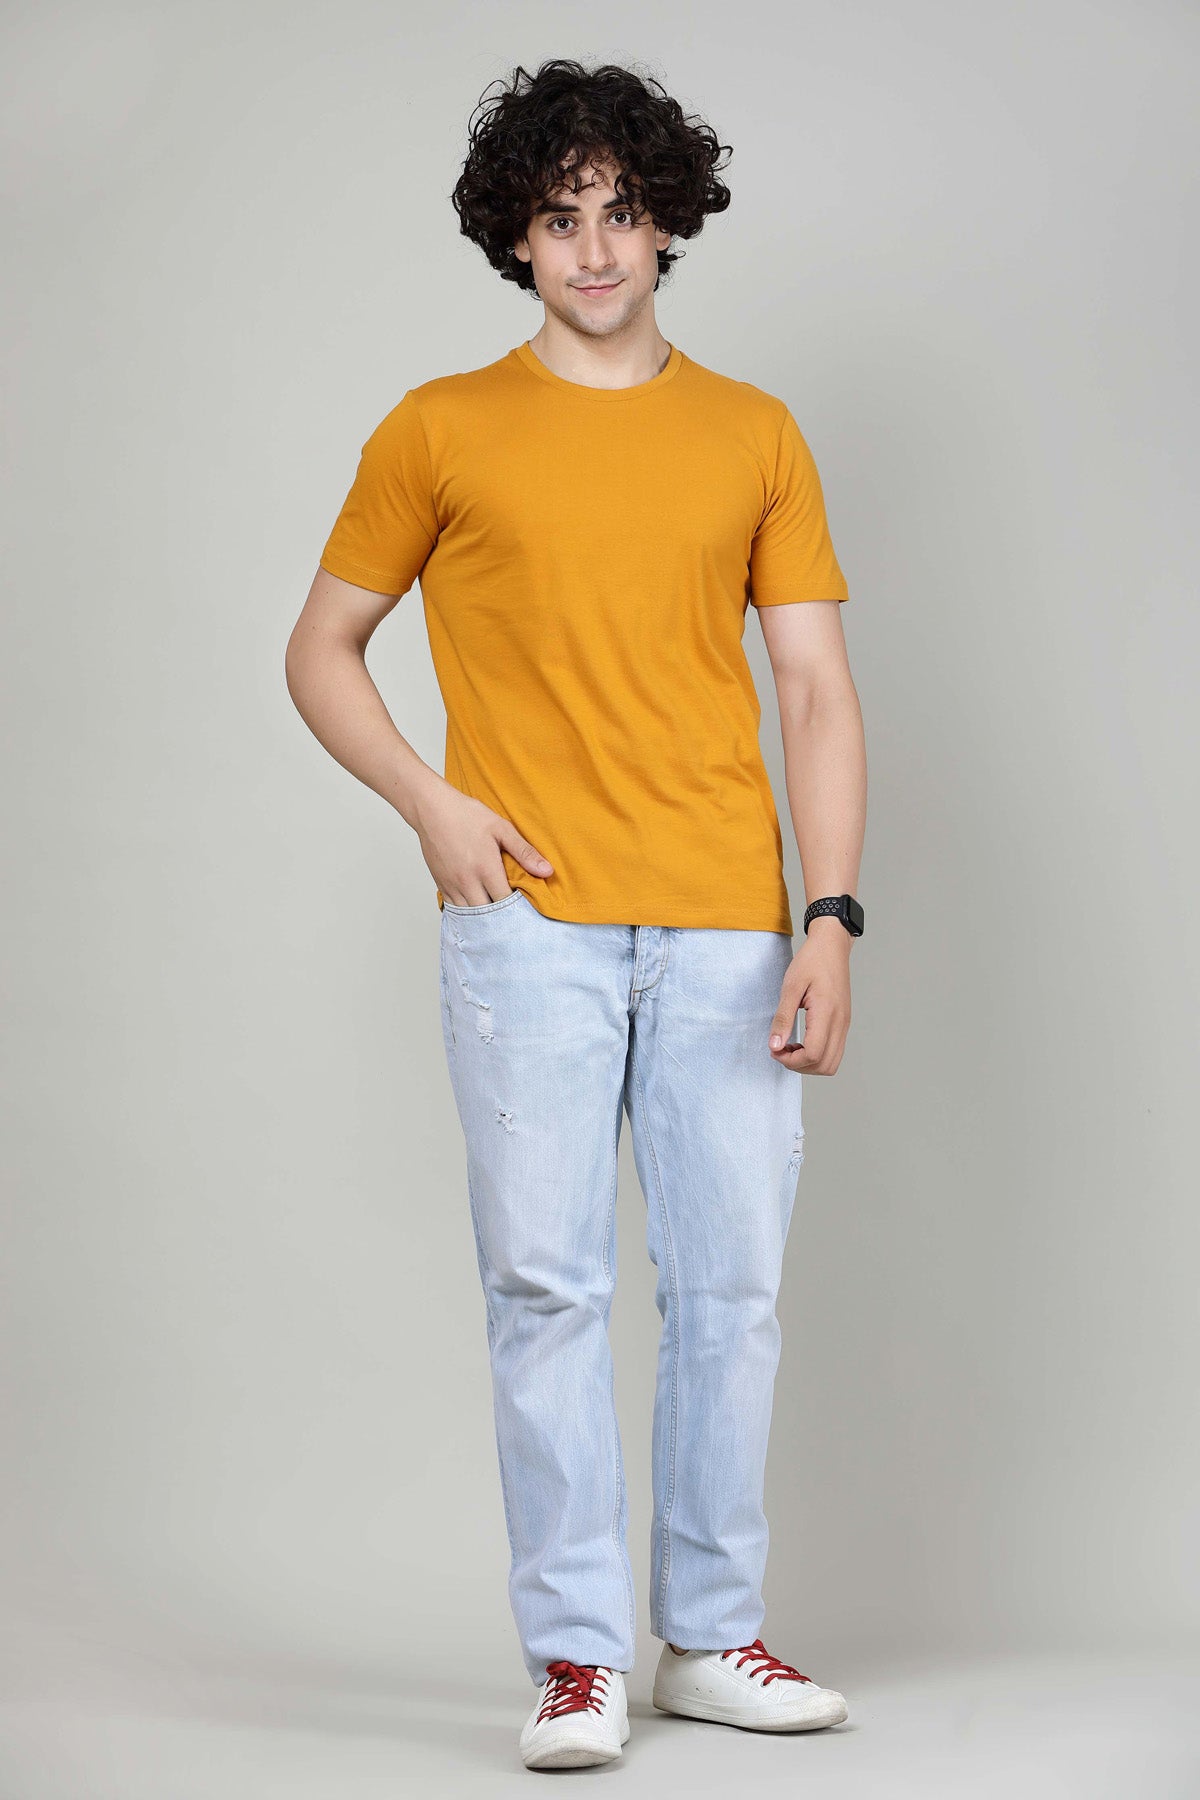 Honey Mustard - Half sleeves T- Shirt